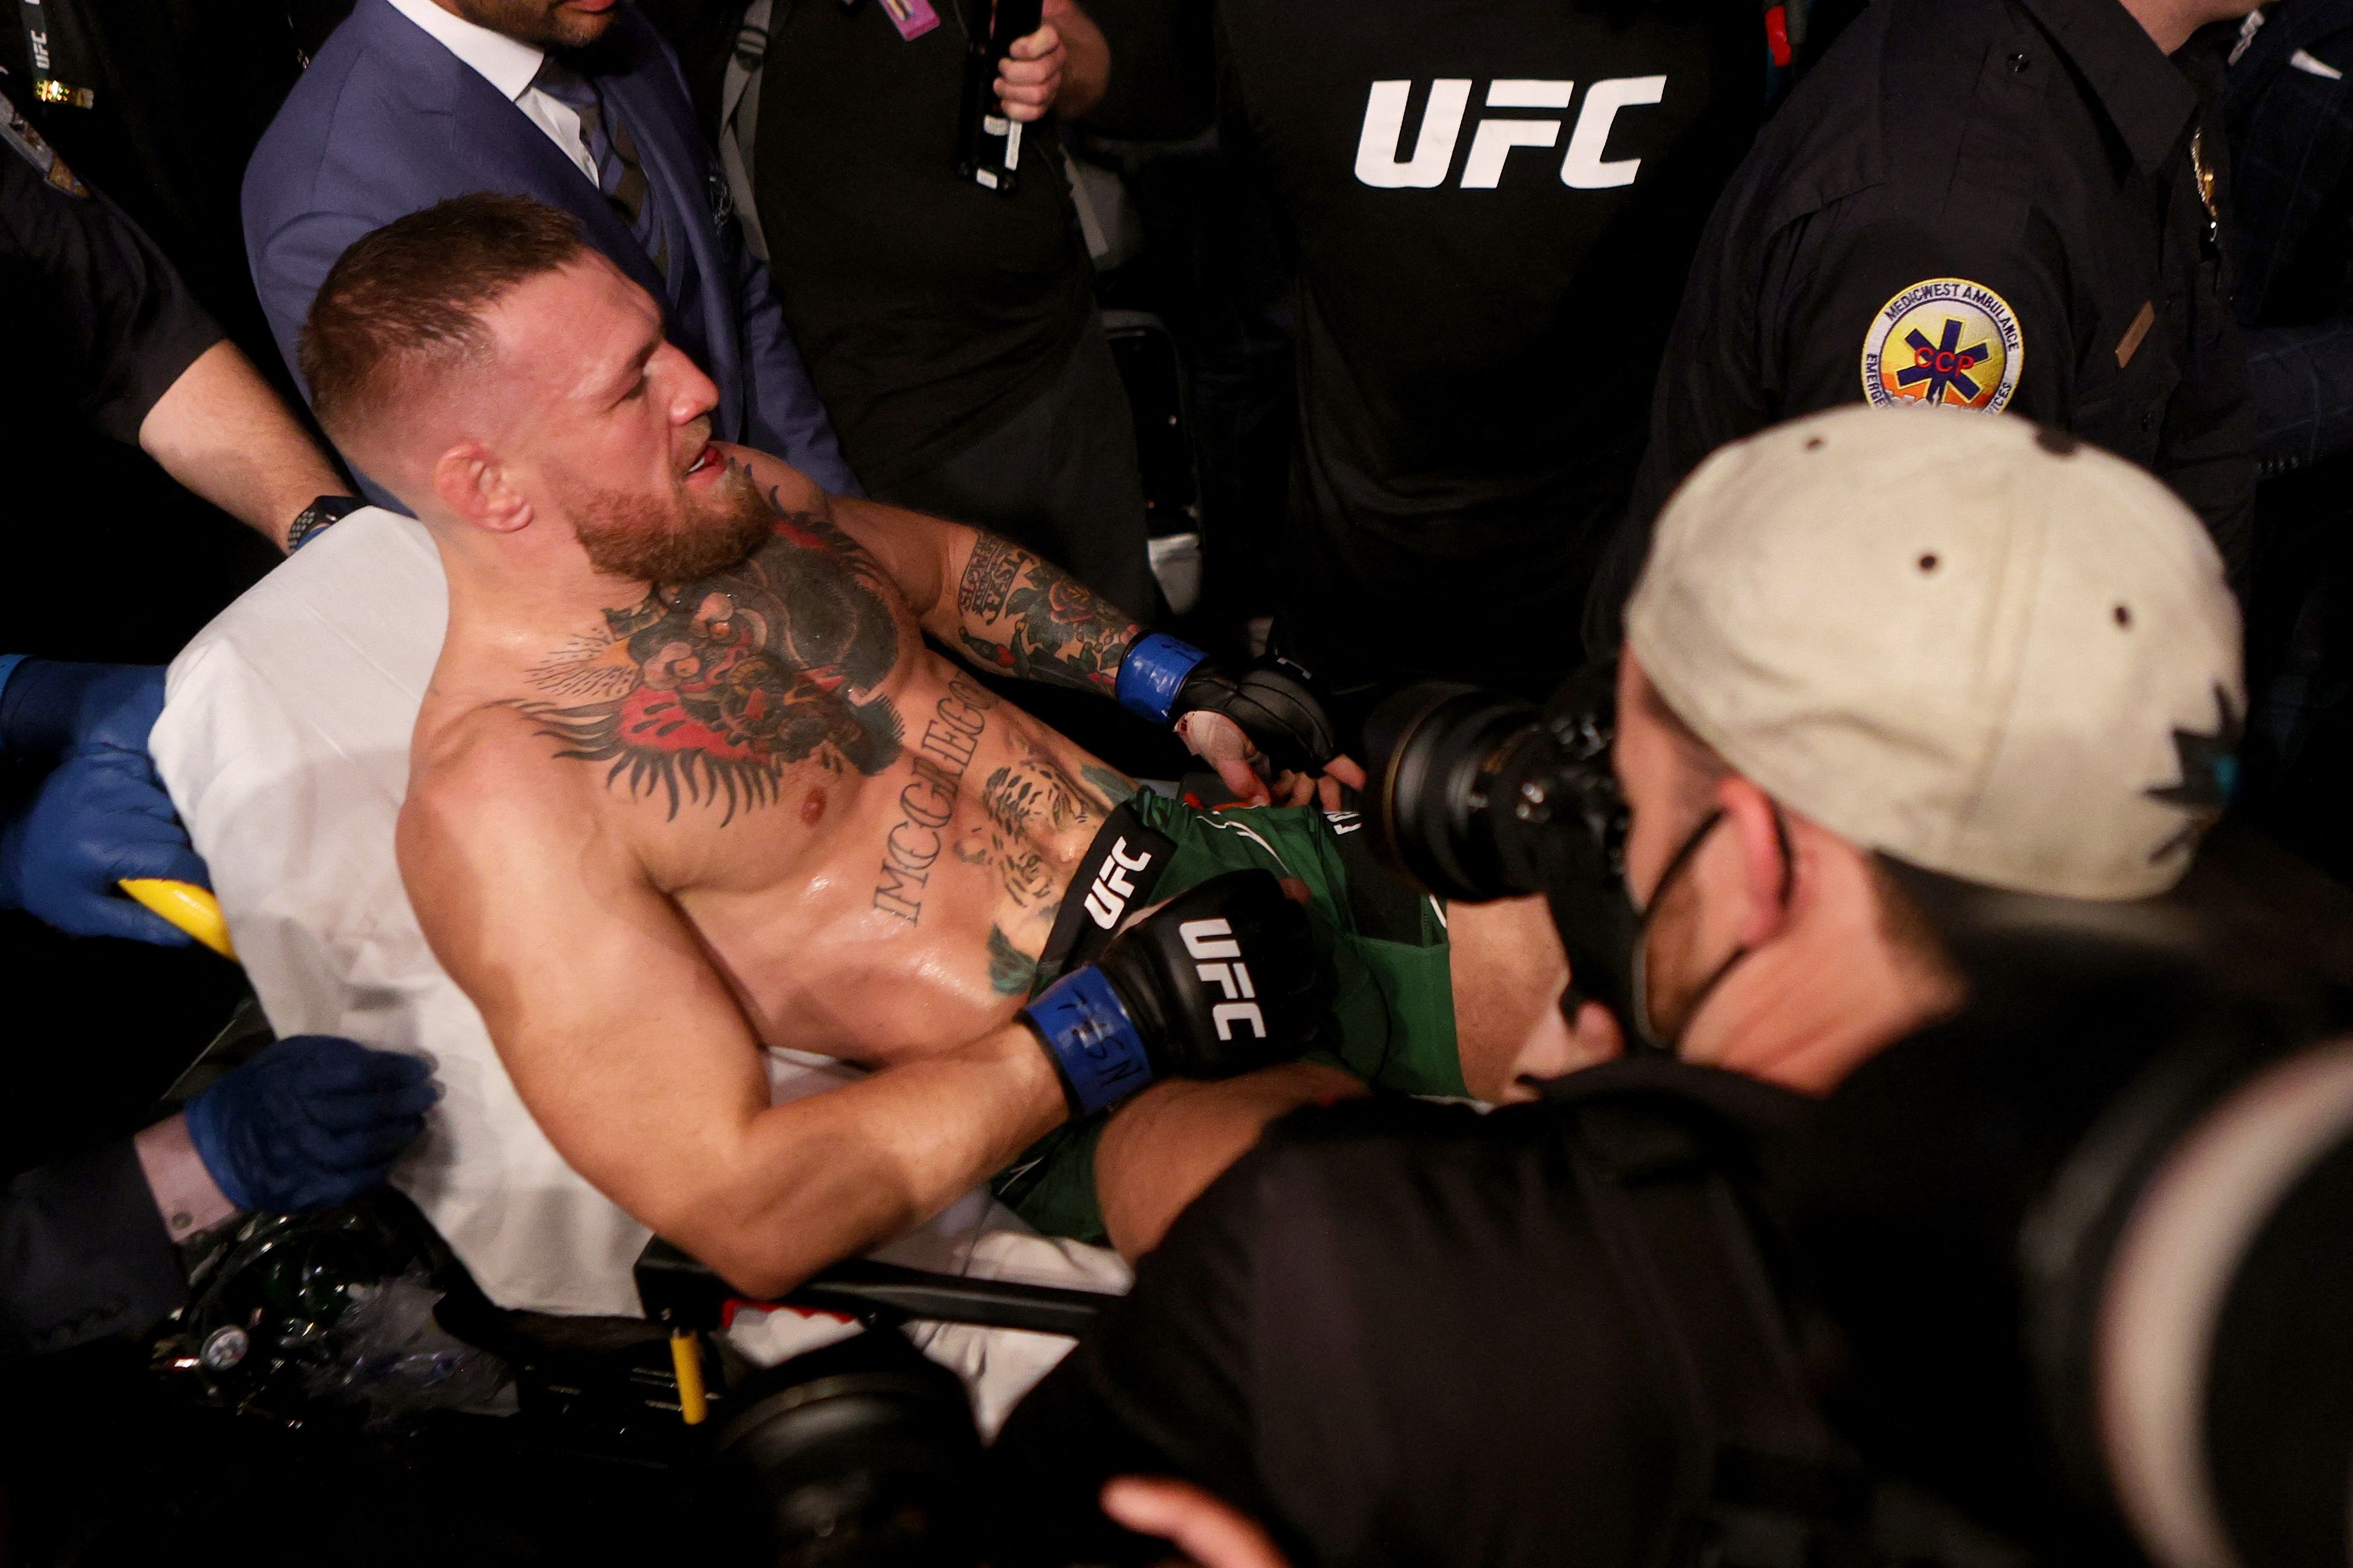 Conor McGregor mientras era sacado en camilla luego de lesionarse el tobillo. (Foto Prensa Libre: AFP)